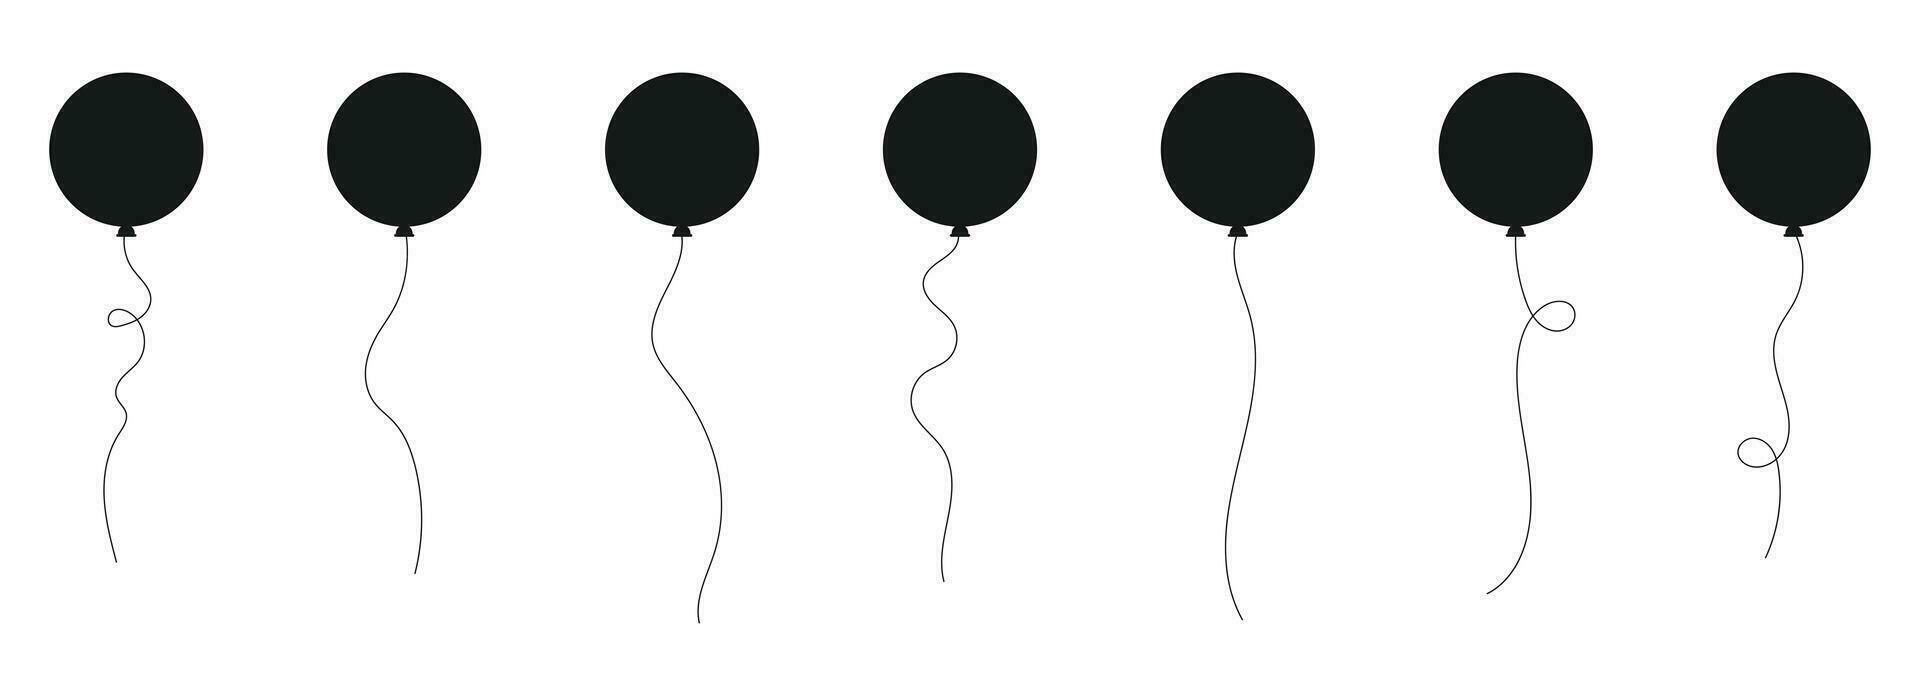 ensemble de noir silhouette fête des ballons lié avec cordes. vecteur illustration dans dessin animé style